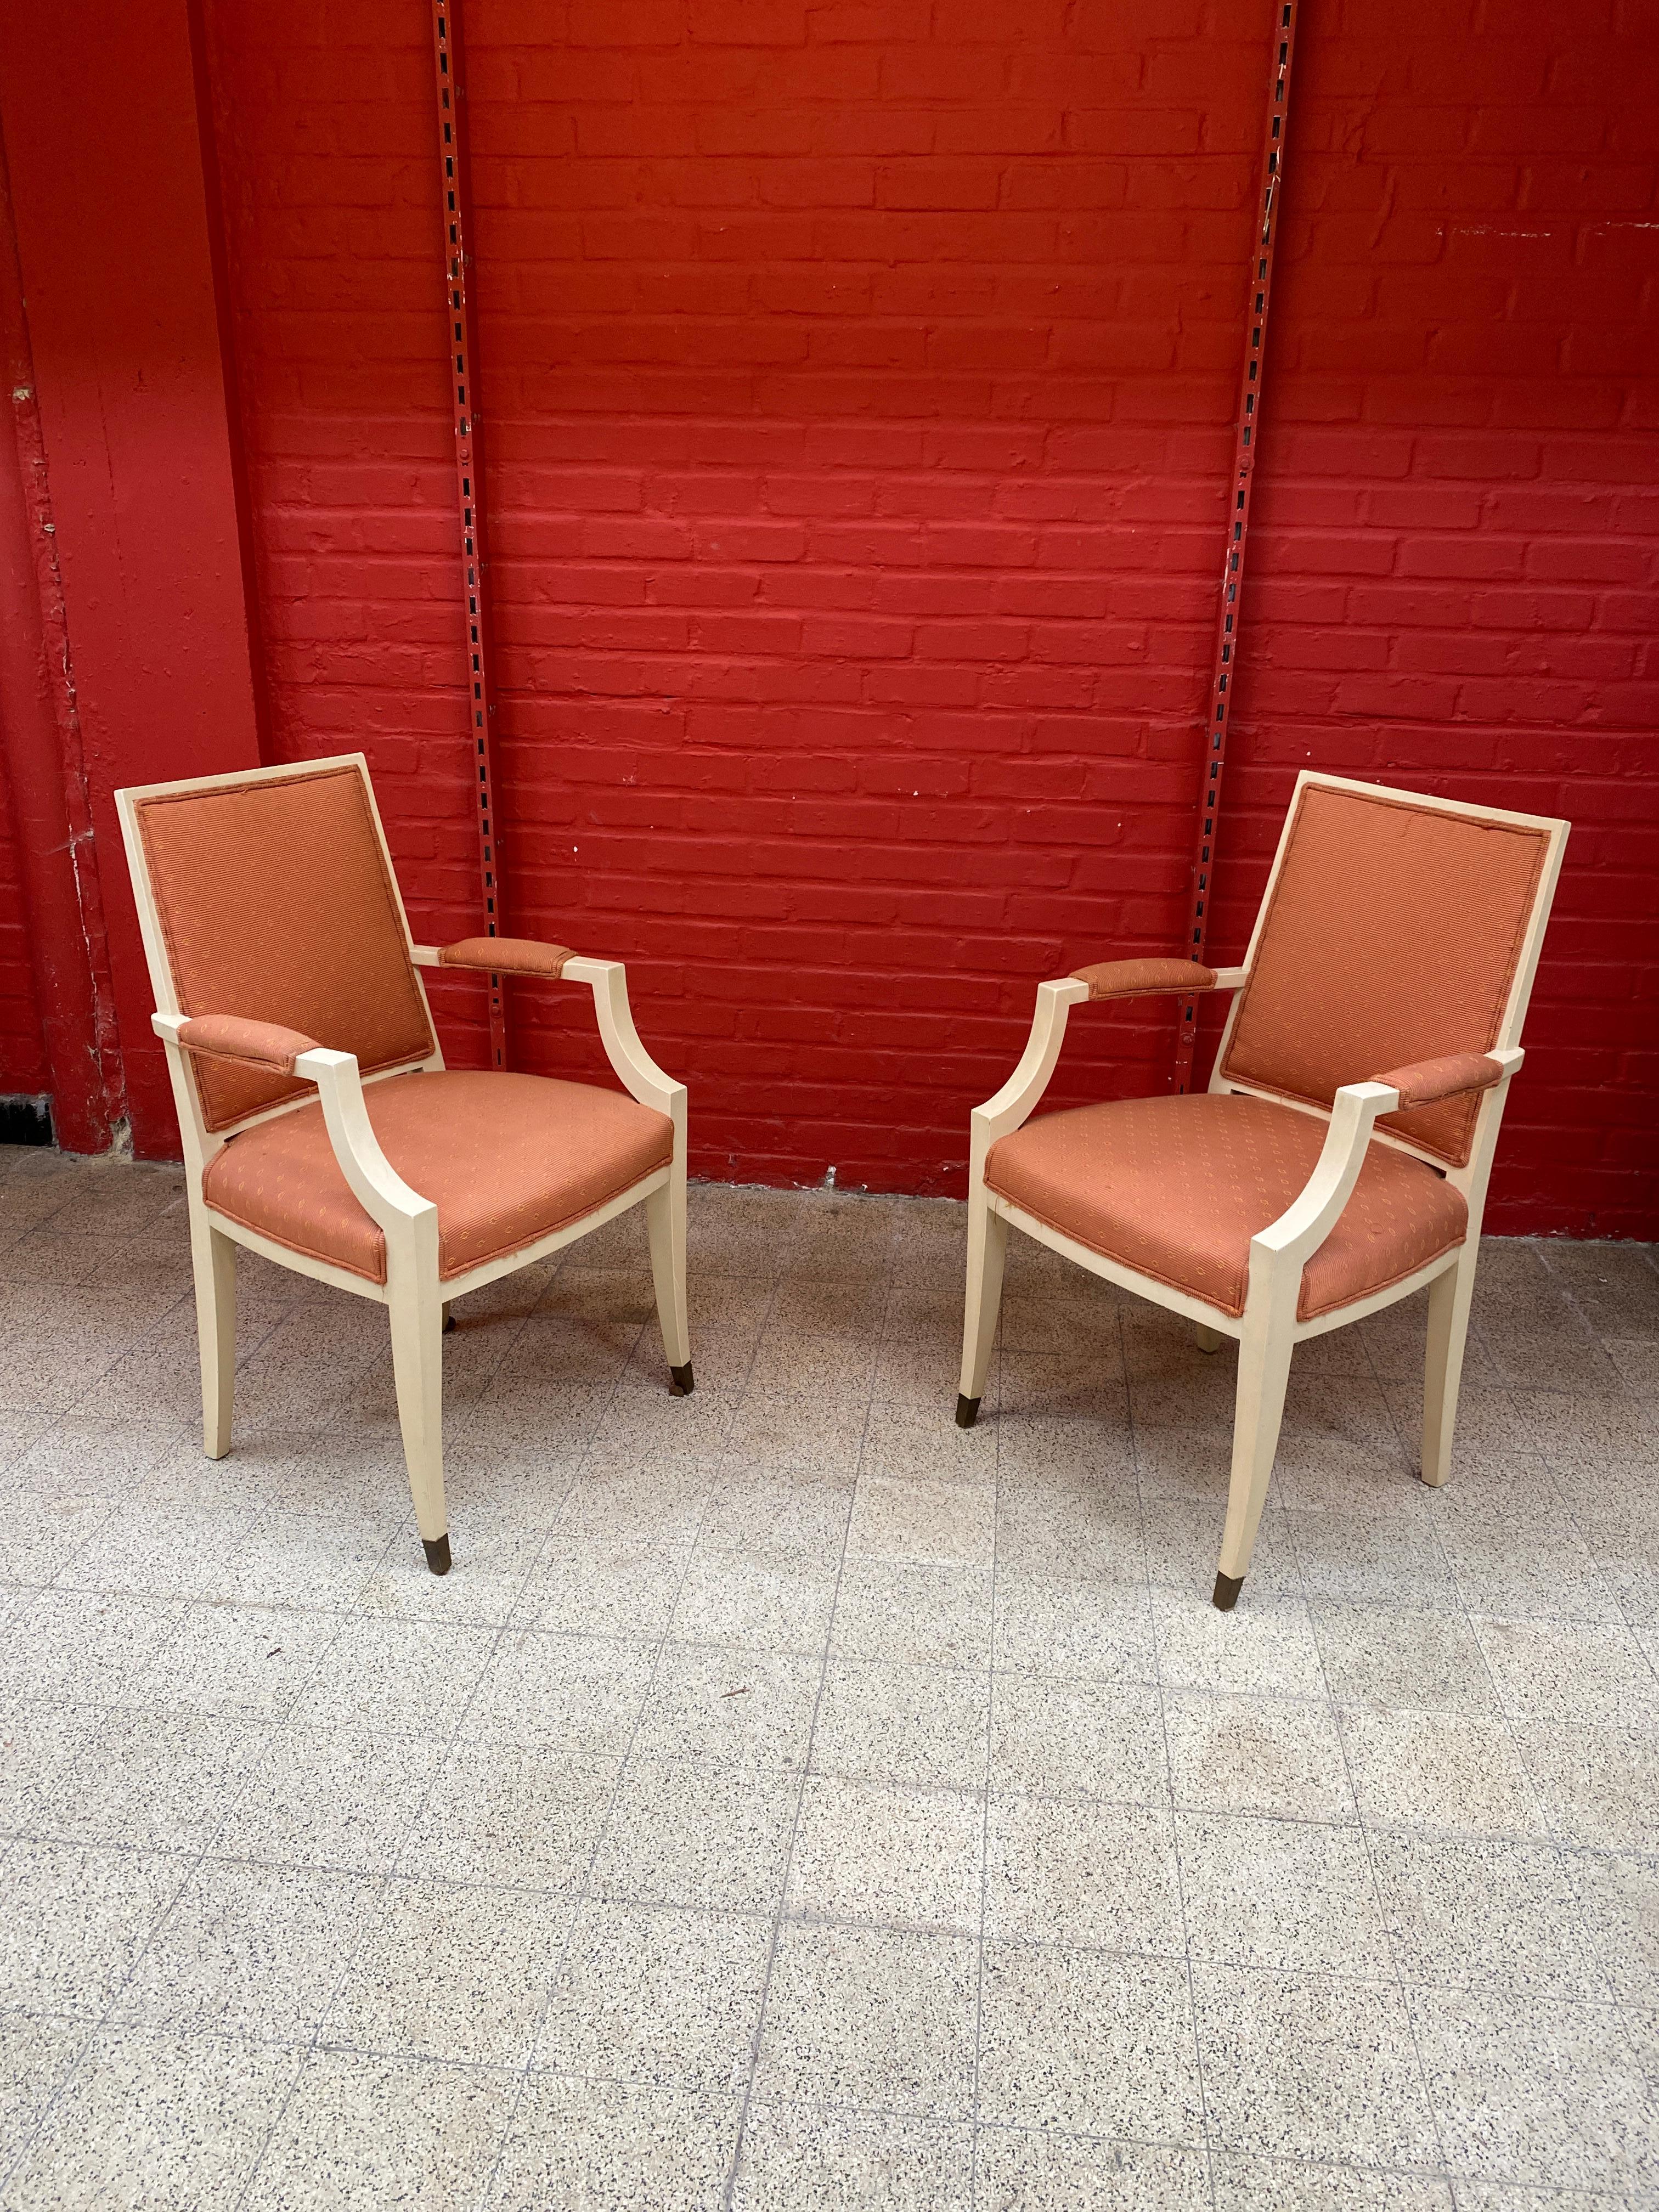 paire de fauteuils Art déco français des années 1940 dans le style d'André Arbus
Bois peint,
Tapisserie refaite, tissu légèrement sale
Une série de 6 modèles de chaises est également disponible.